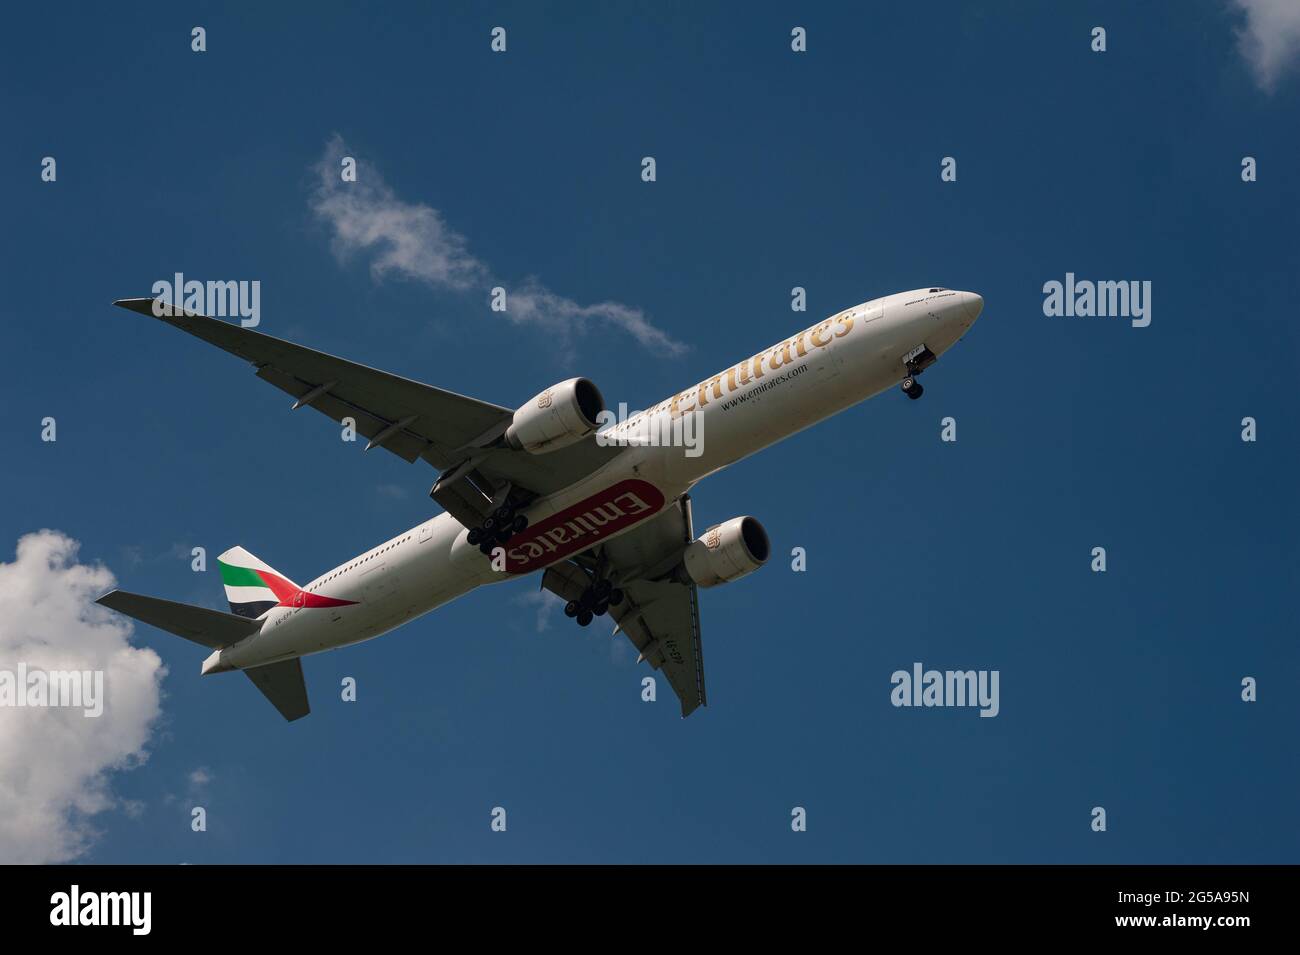 23.06.2021, Singapur, Republik Singapur, Asien - ein Passagierflugzeug der Emirates Airline Boeing 777-300 er nähert sich dem Changi Airport zur Landung. Stockfoto